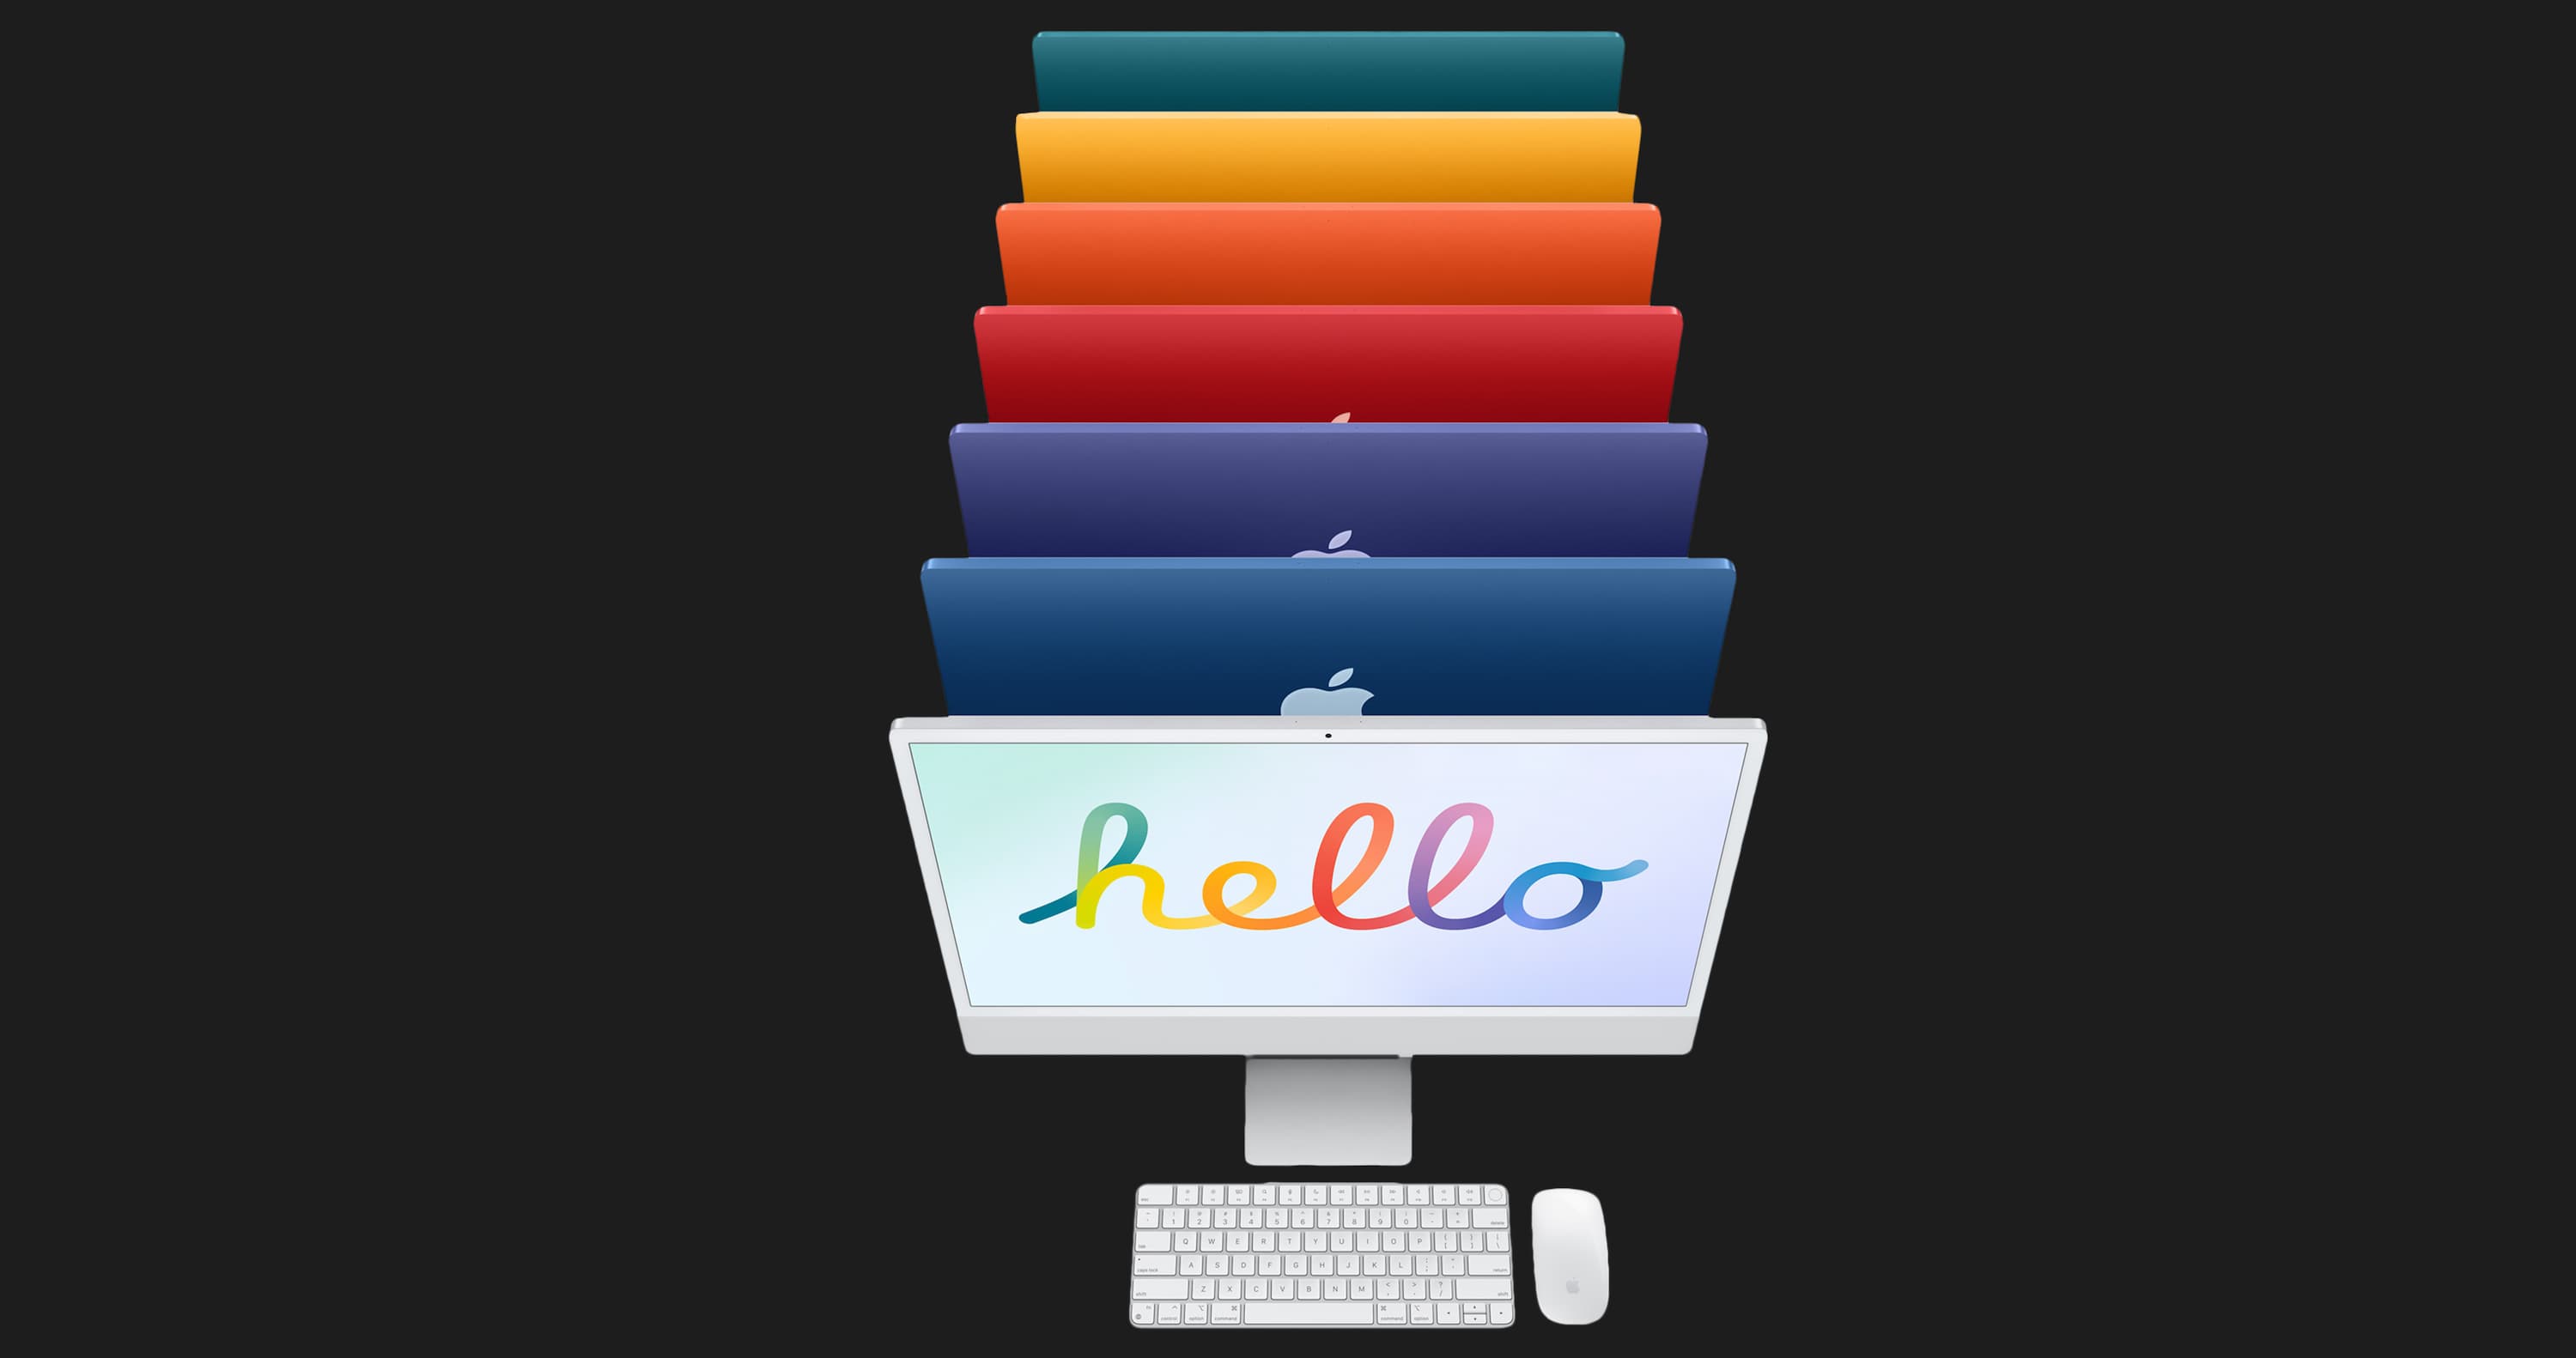 Apple iMac 24 with Retina 4.5K, 256GB, 8 CPU / 8 GPU (Purple) (Z130)